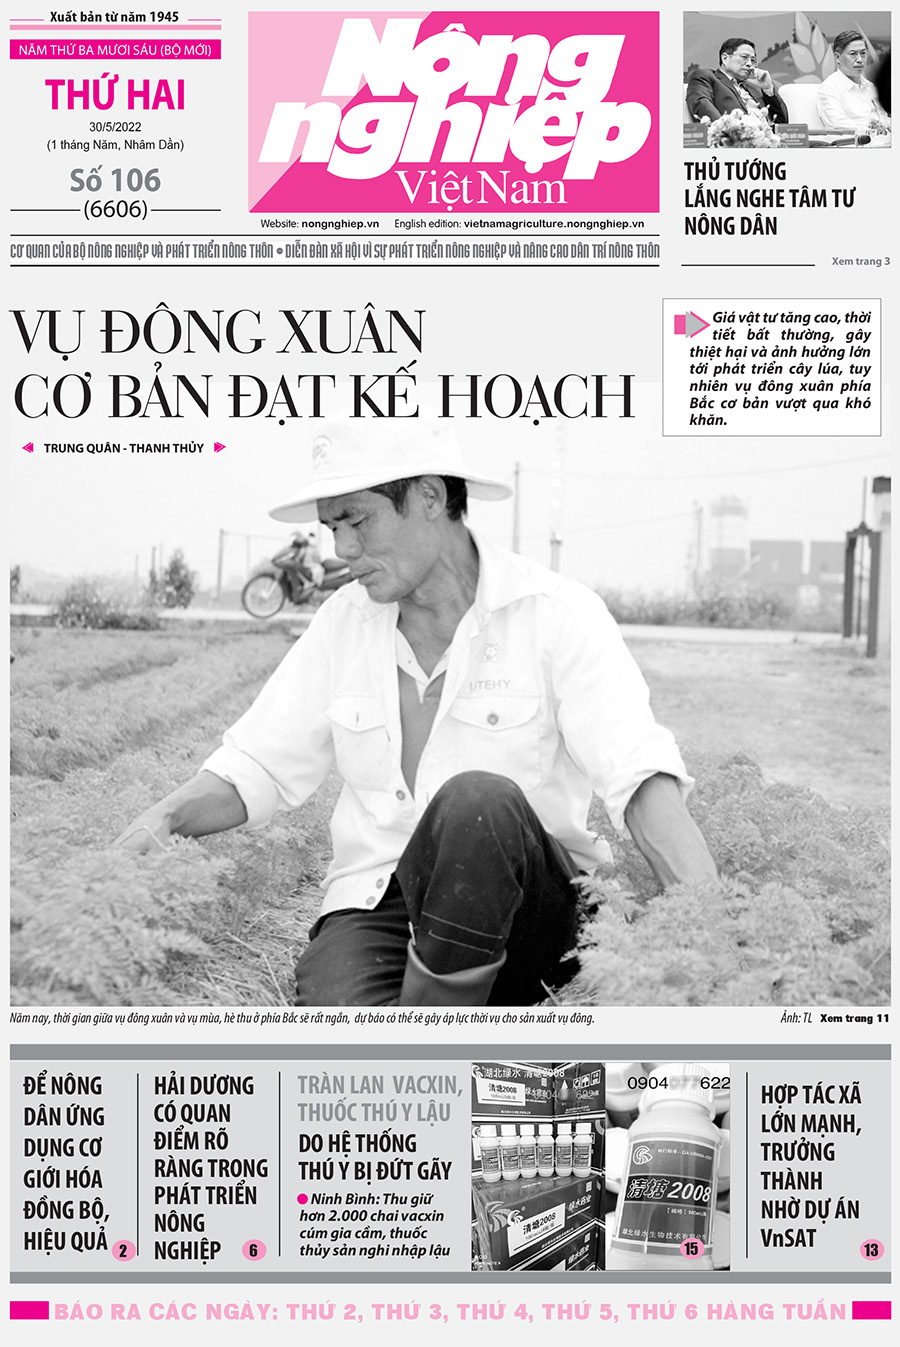 Tổng hợp tin tức báo giấy trên Báo Nông nghiệp Việt Nam số 106 ra ngày 30/5/2022